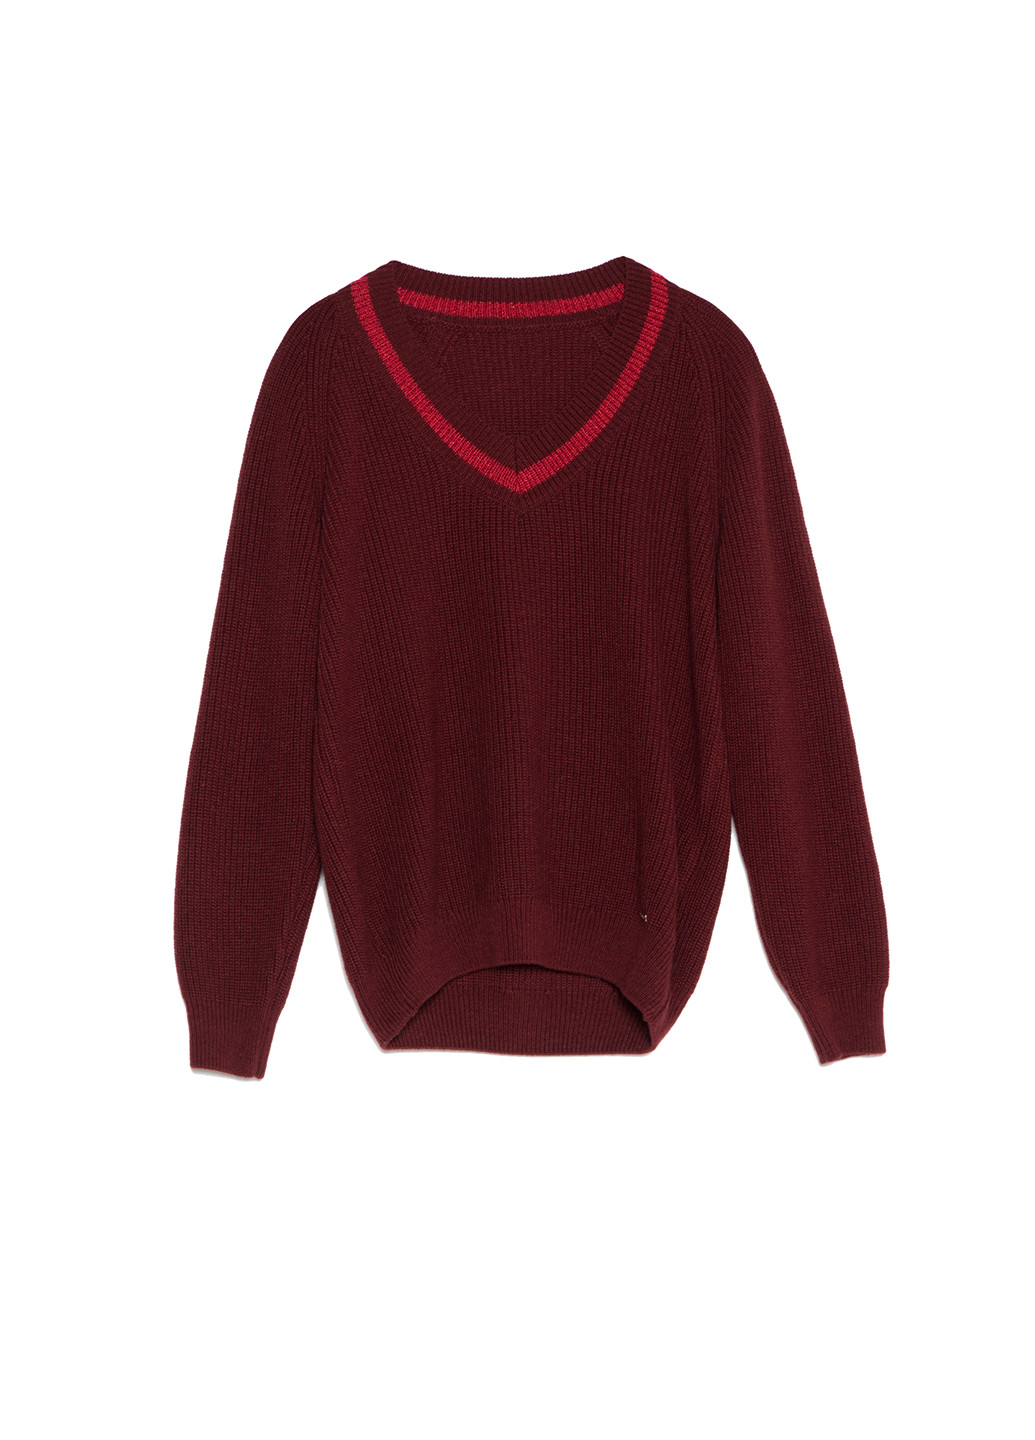 Бордовый демисезонный пуловер пуловер Conte